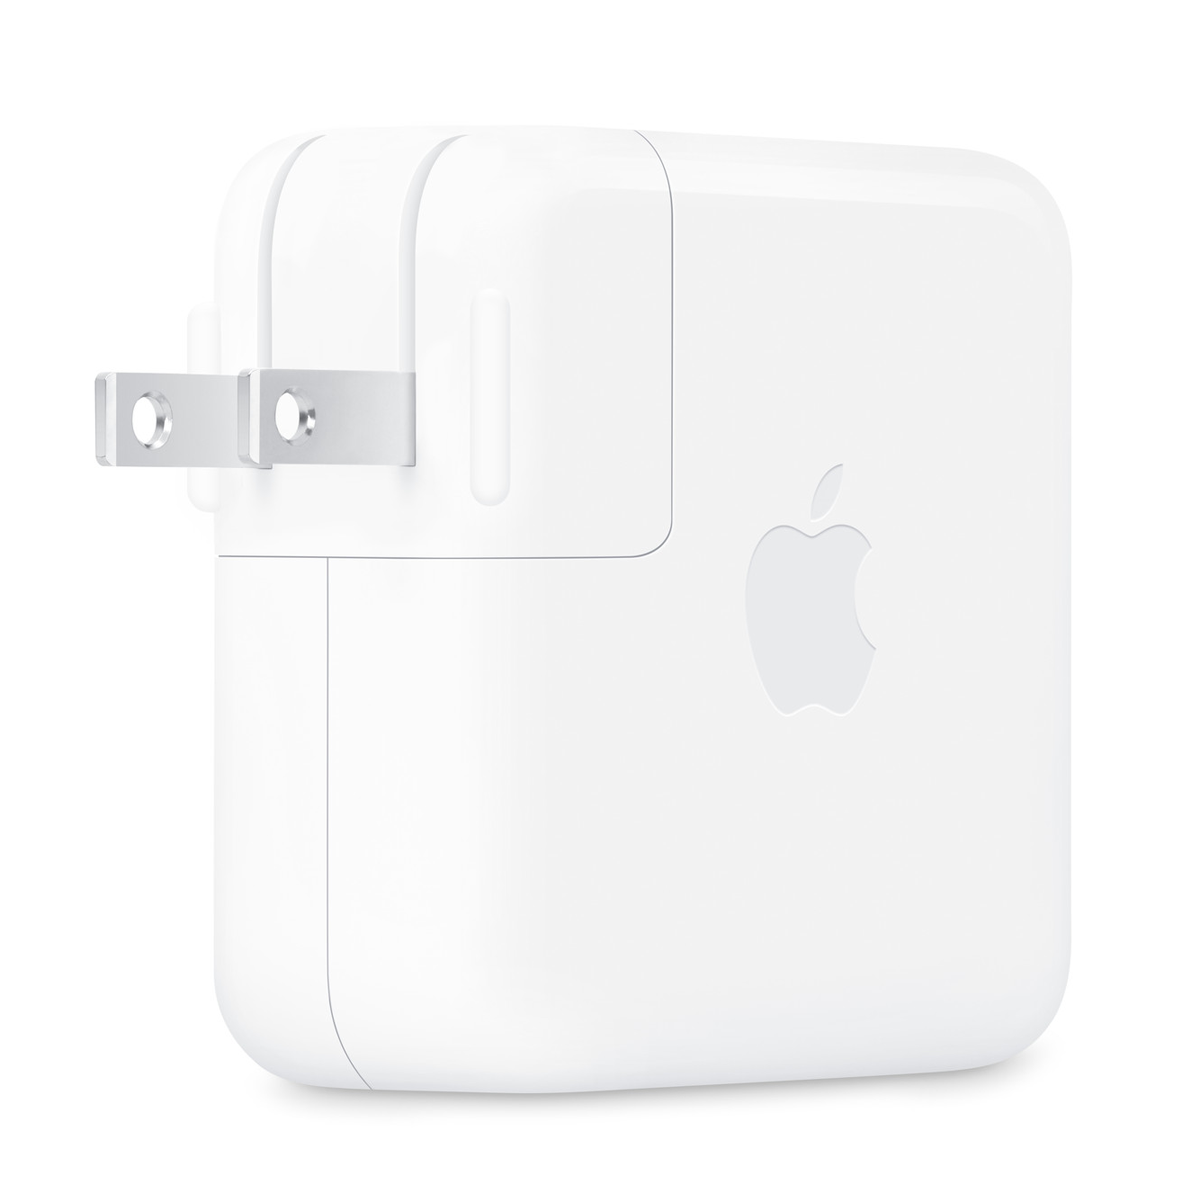 شارژر دیواری اپل مدل USB-C توان 96 وات